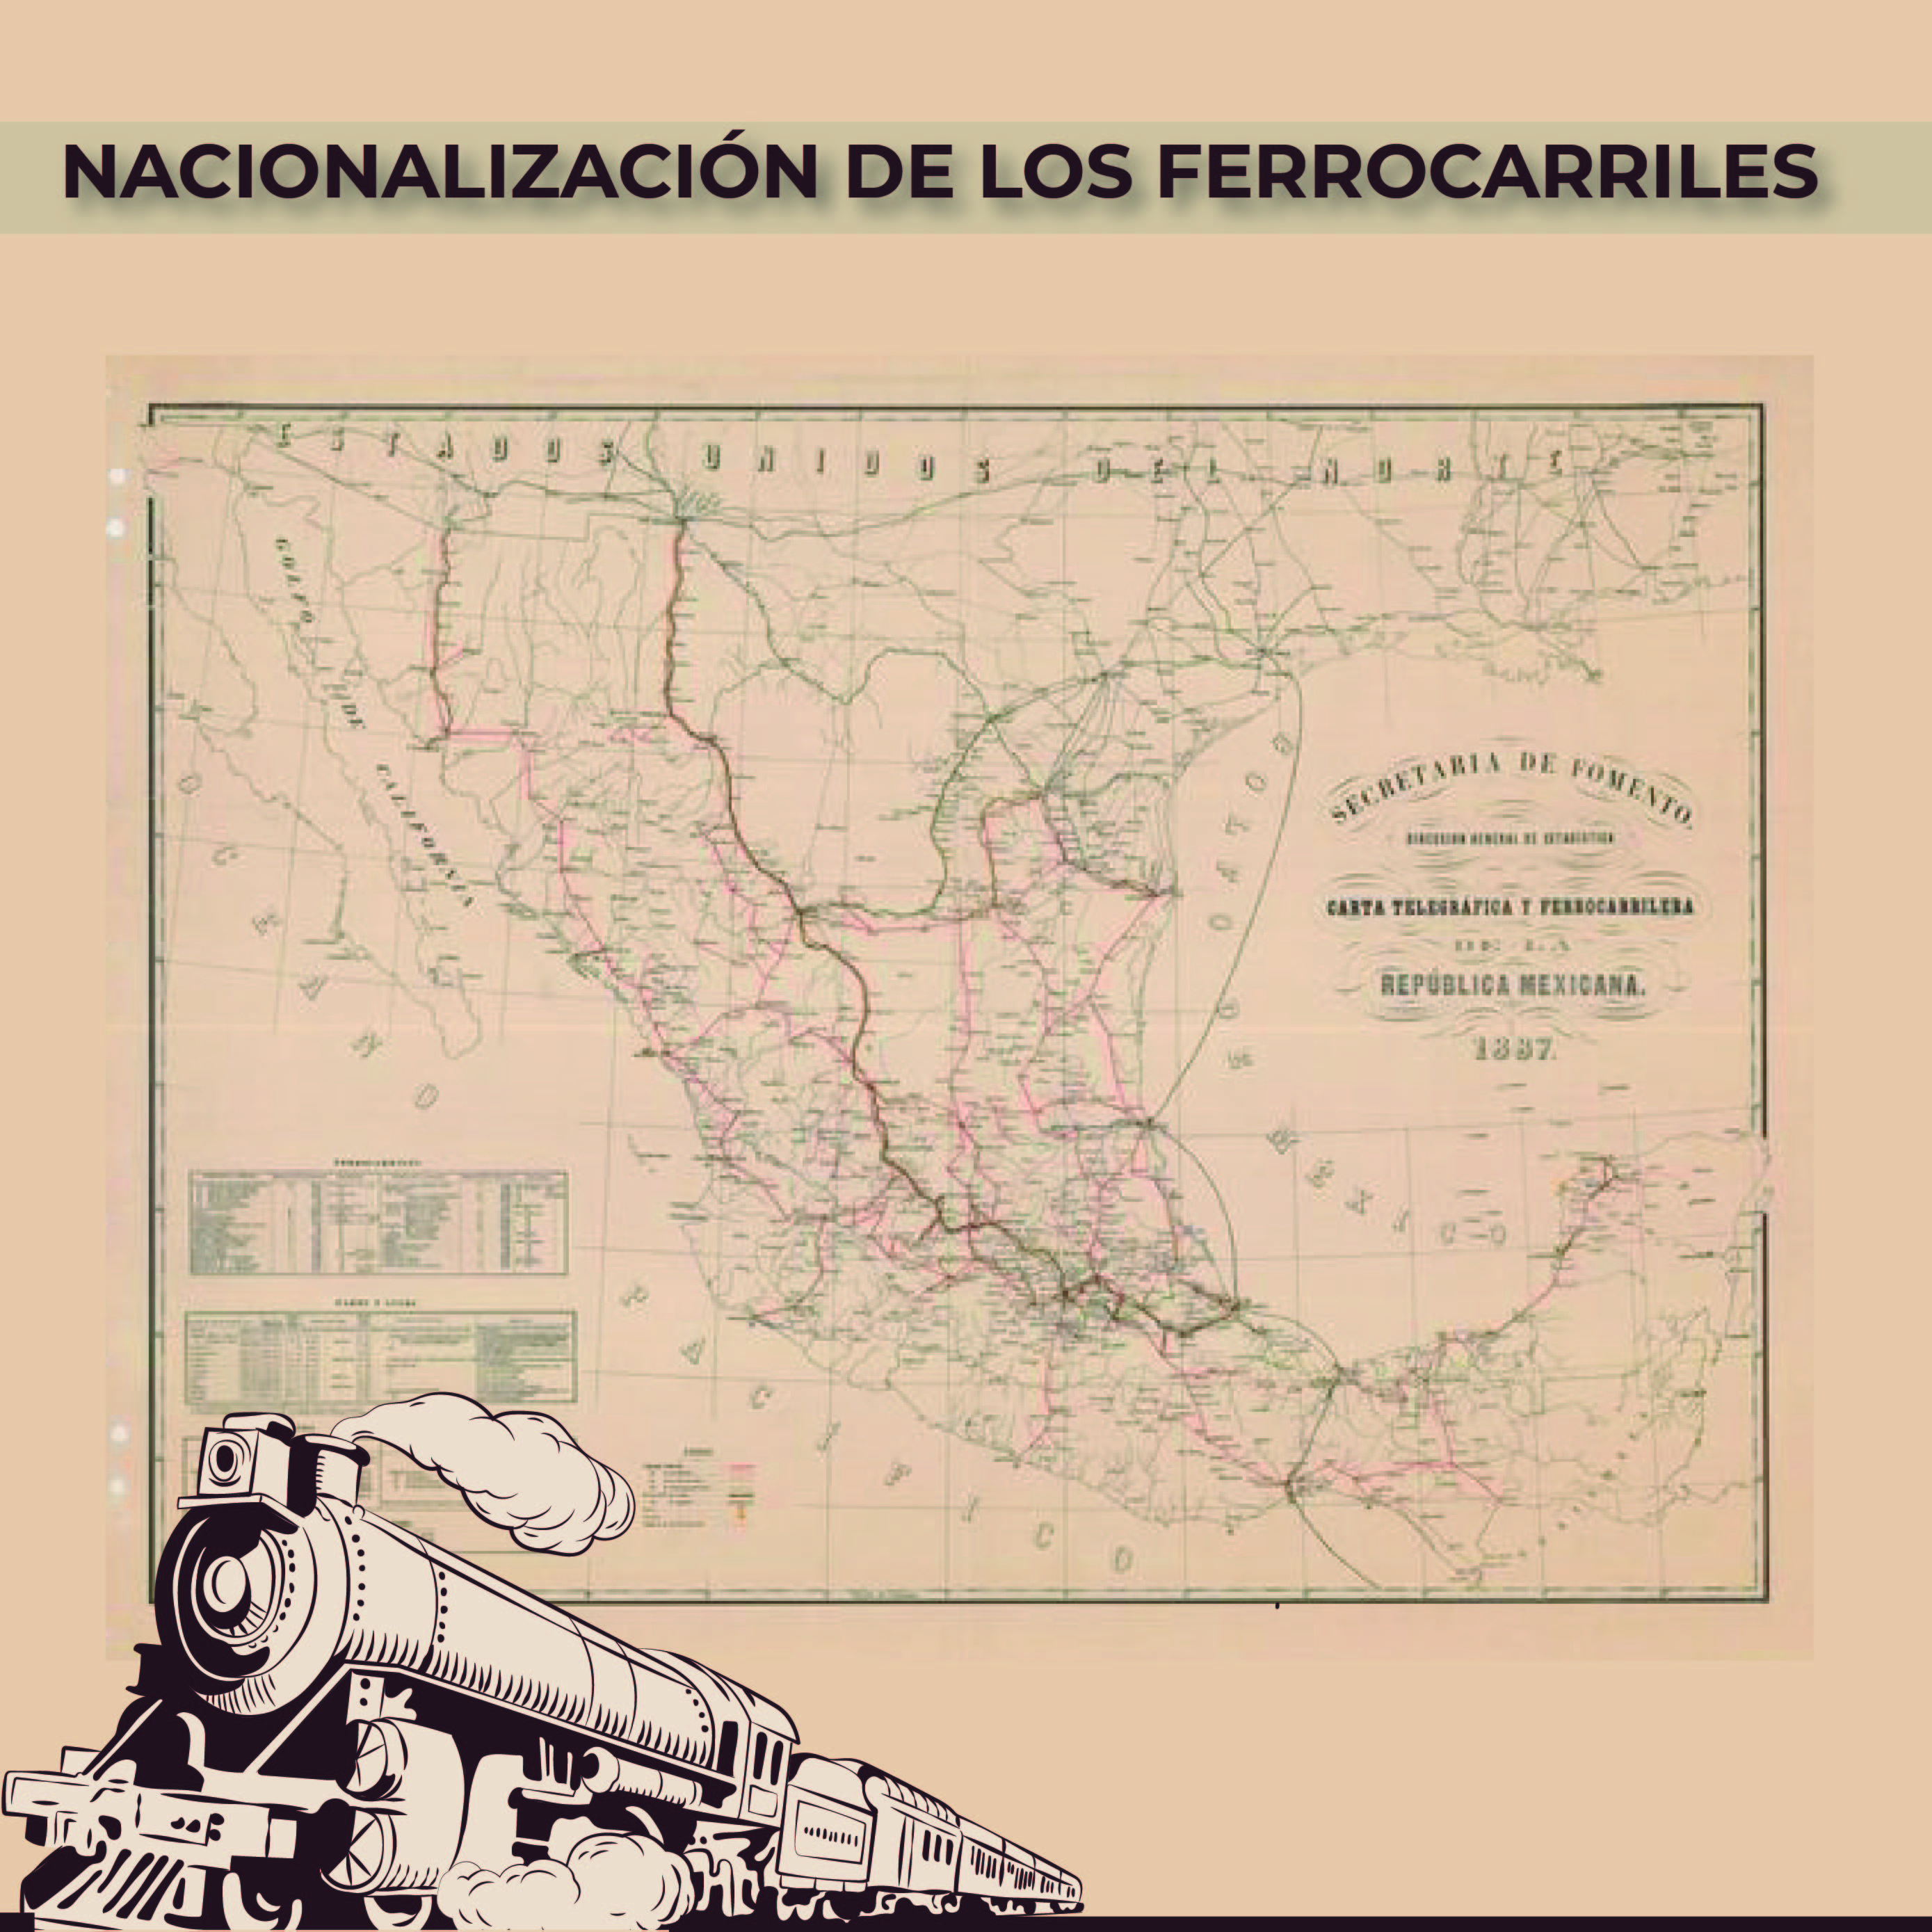 Para conmemorar un año más de la Nacionalización de los ferrocarriles, la Mapoteca Manuel Orozco y Berra presenta esta imagen titulada: “Carta telegráfica y ferrocarrilera”, elaborada en 1887. 